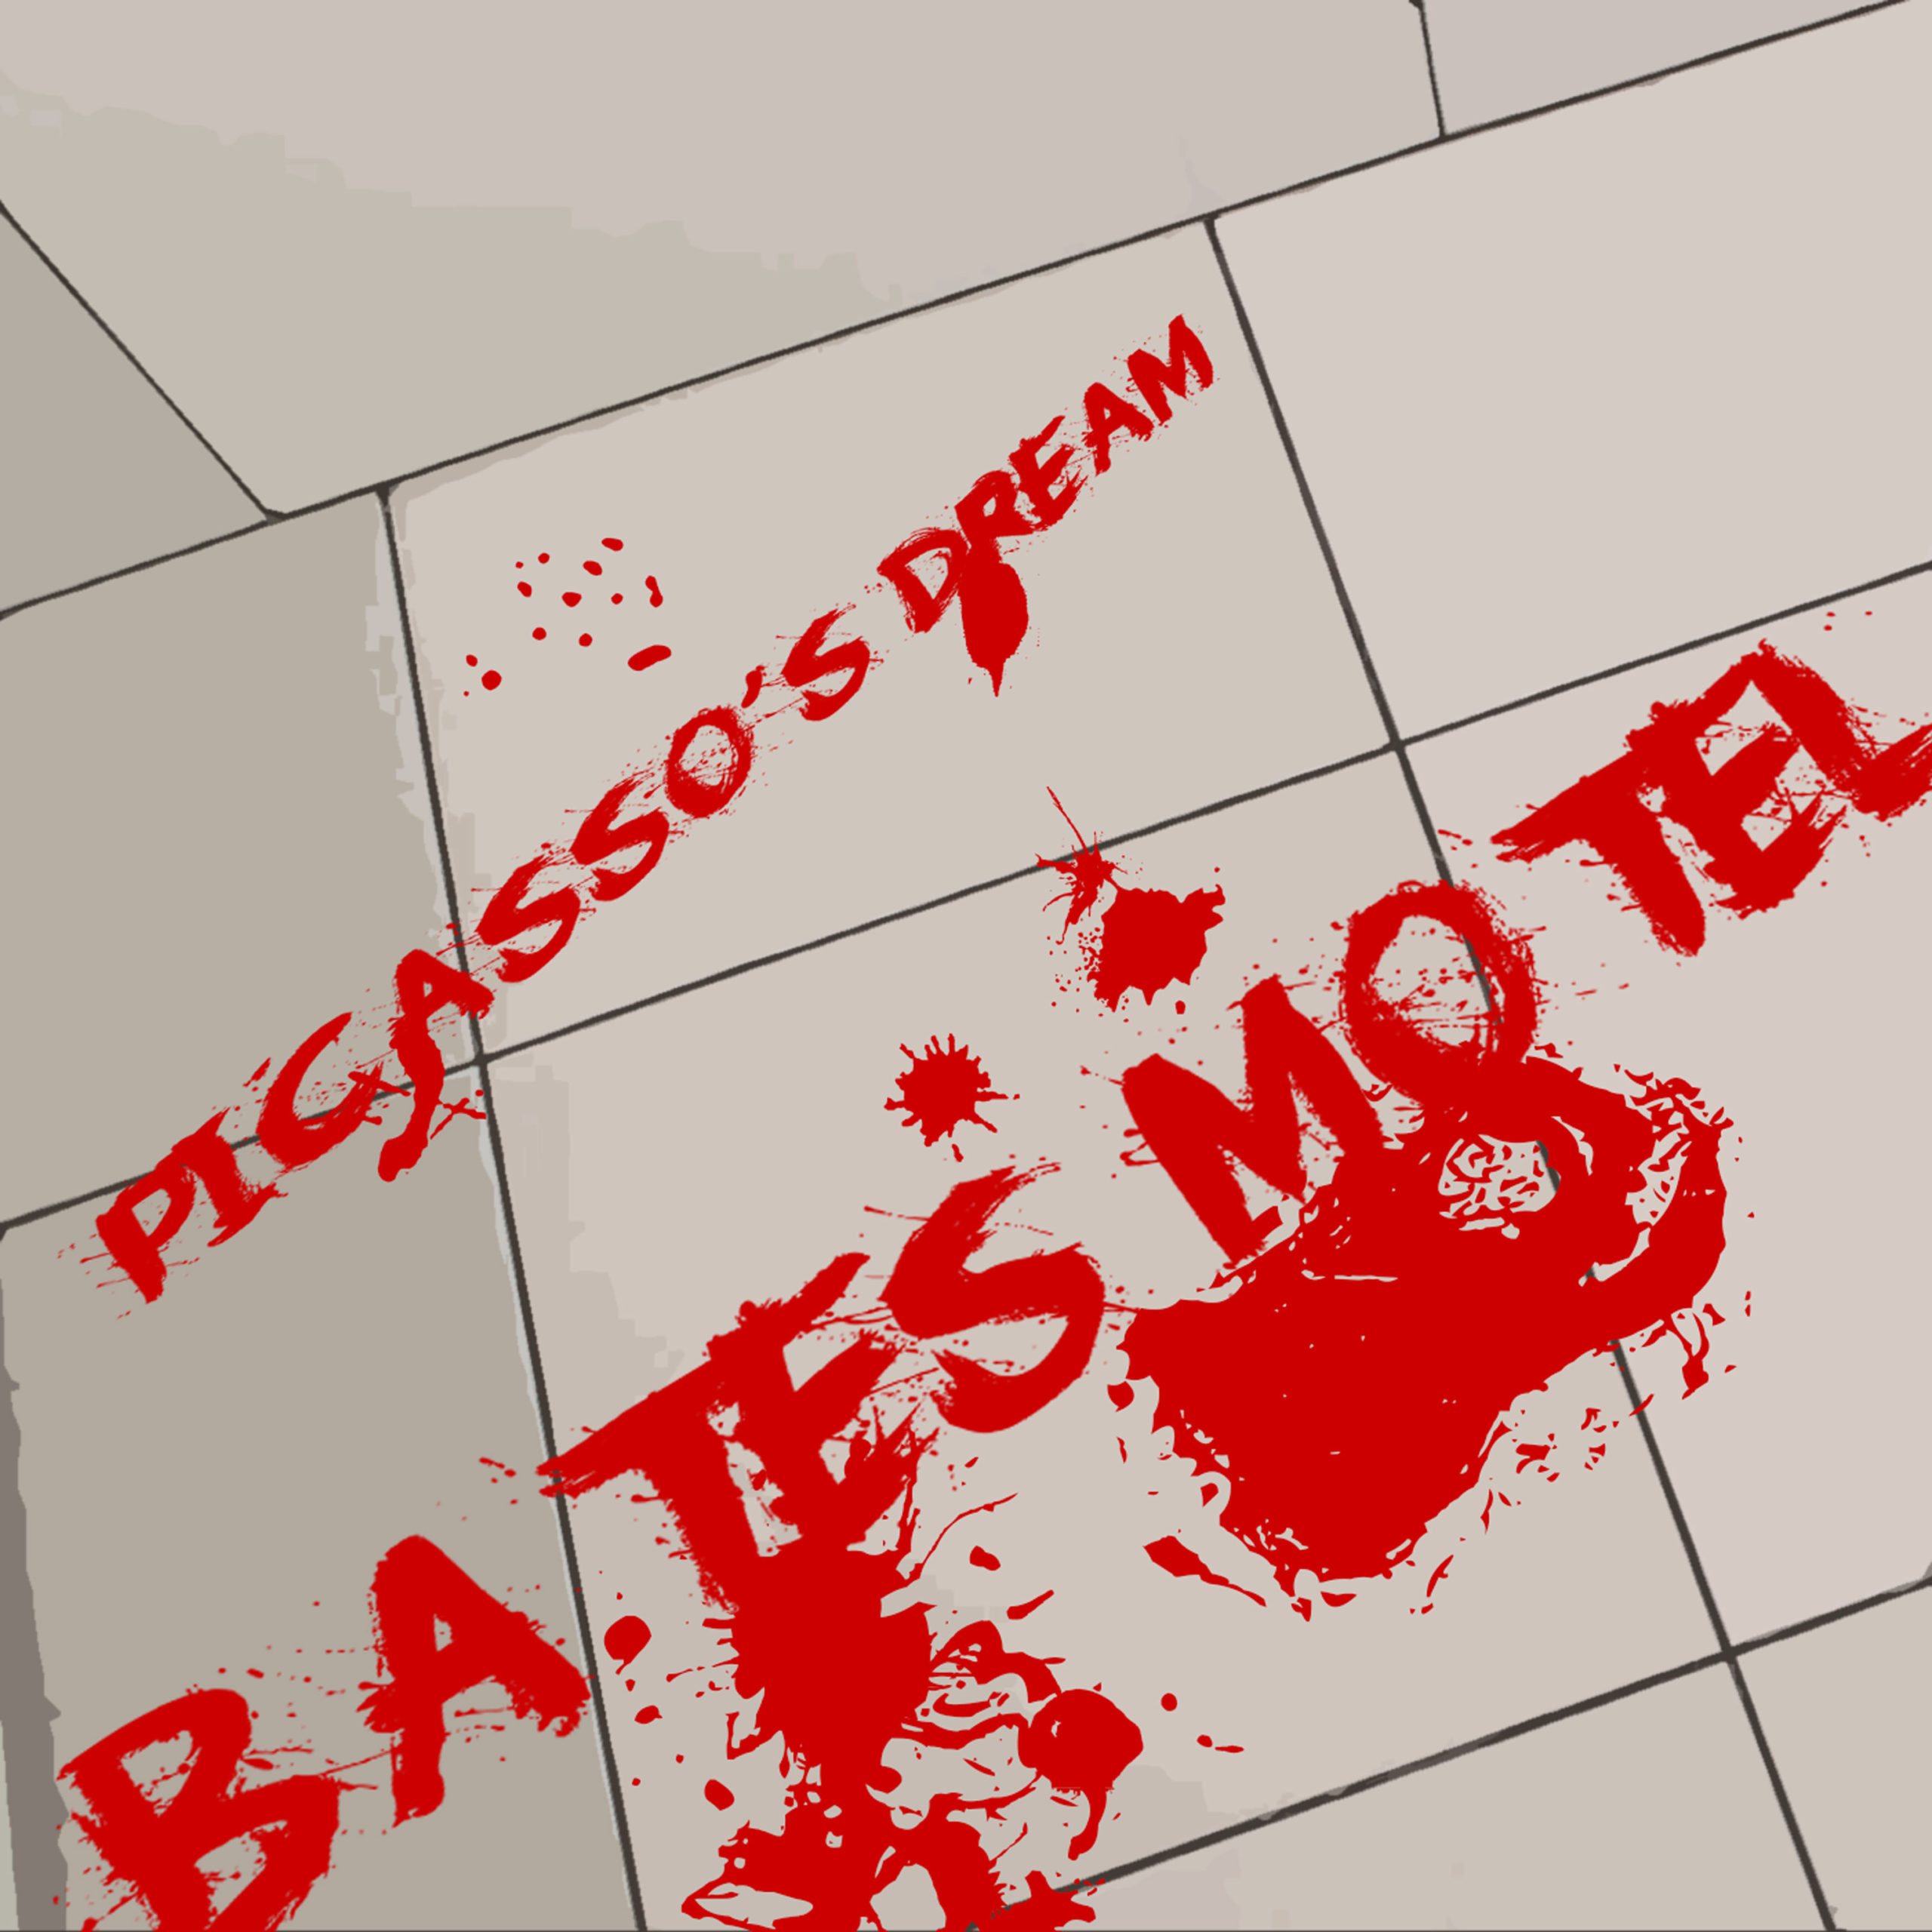 Progressive Rock - Picasso's Dream - Bates Motel